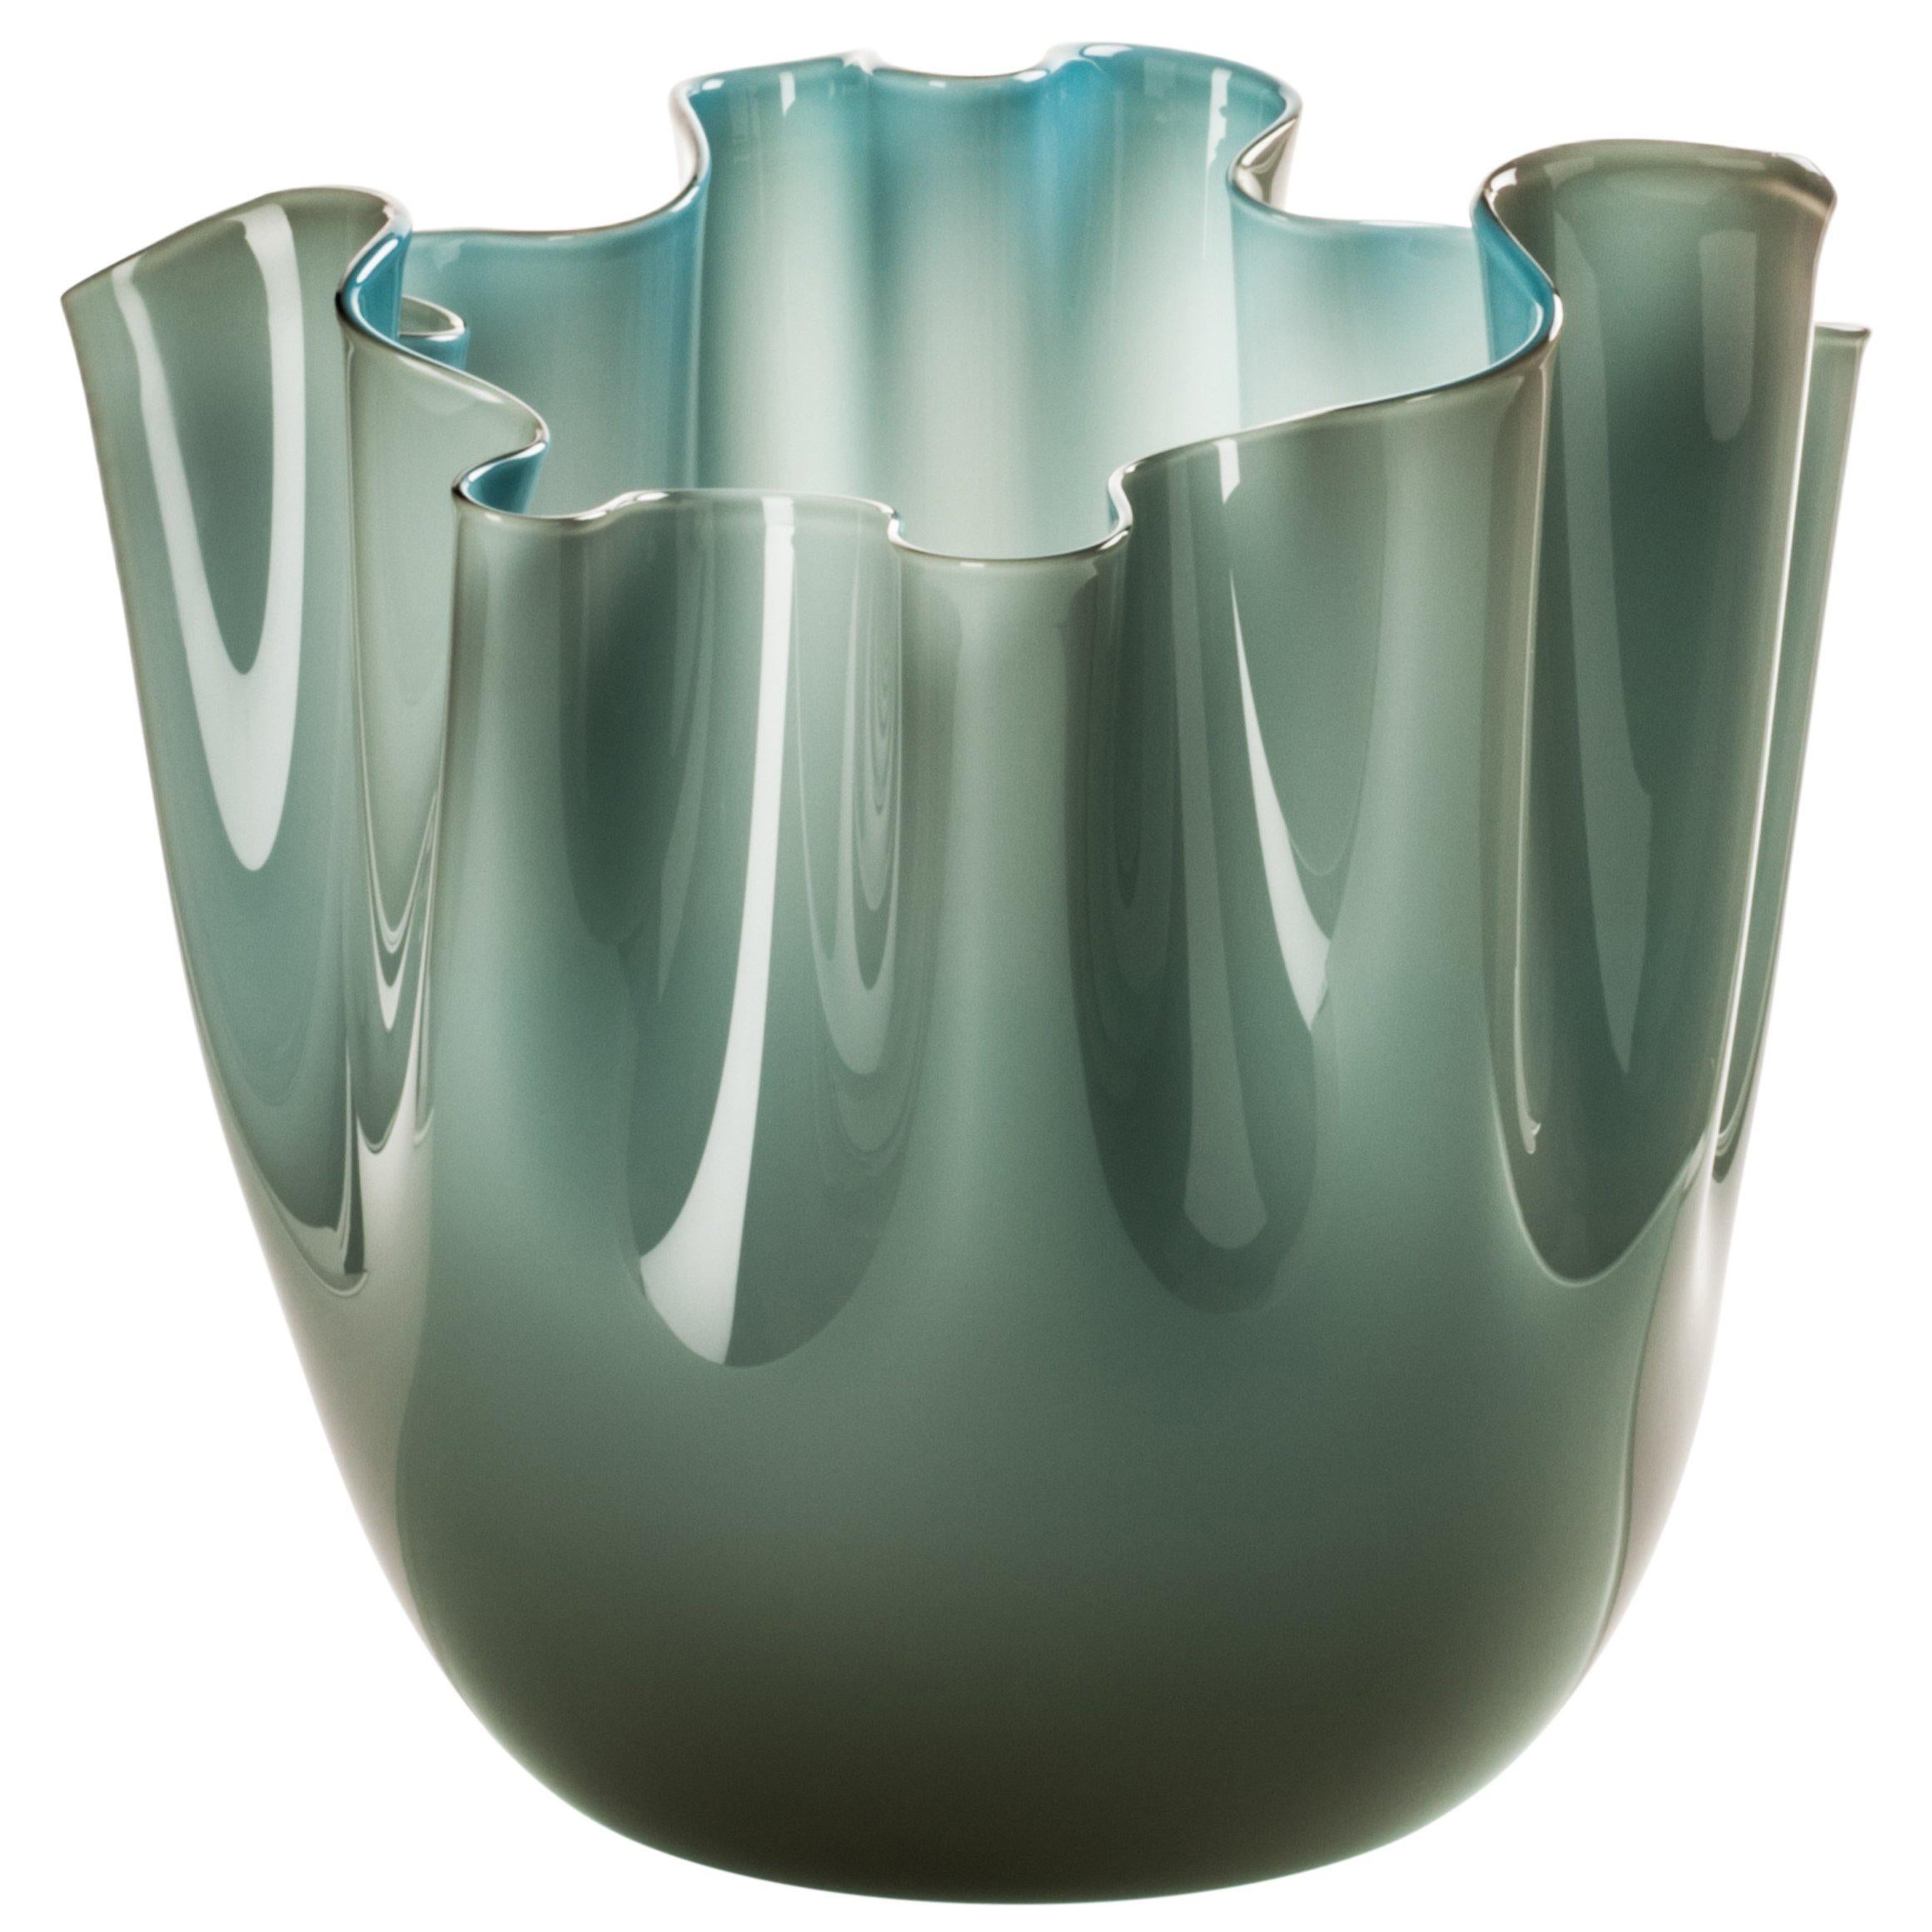 Fazzoletto Glass Vase in Grey and Aquamarine by Fulvio Bianconi & Paolo Venini